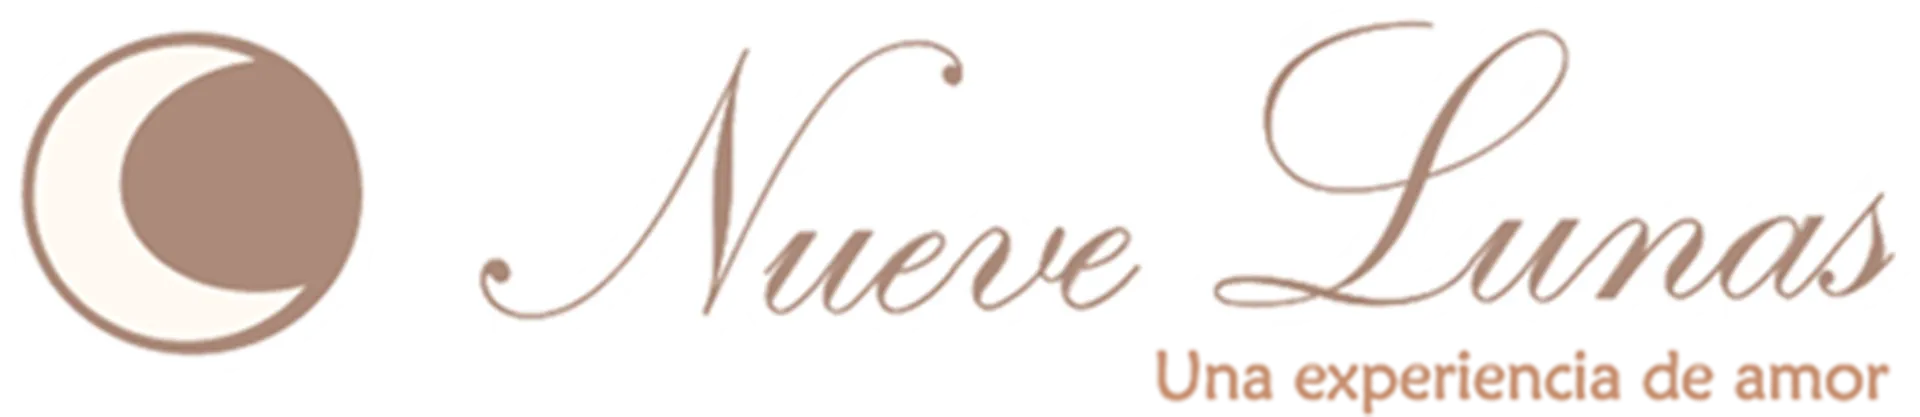 NUEVE LUNAS logo de catálogo